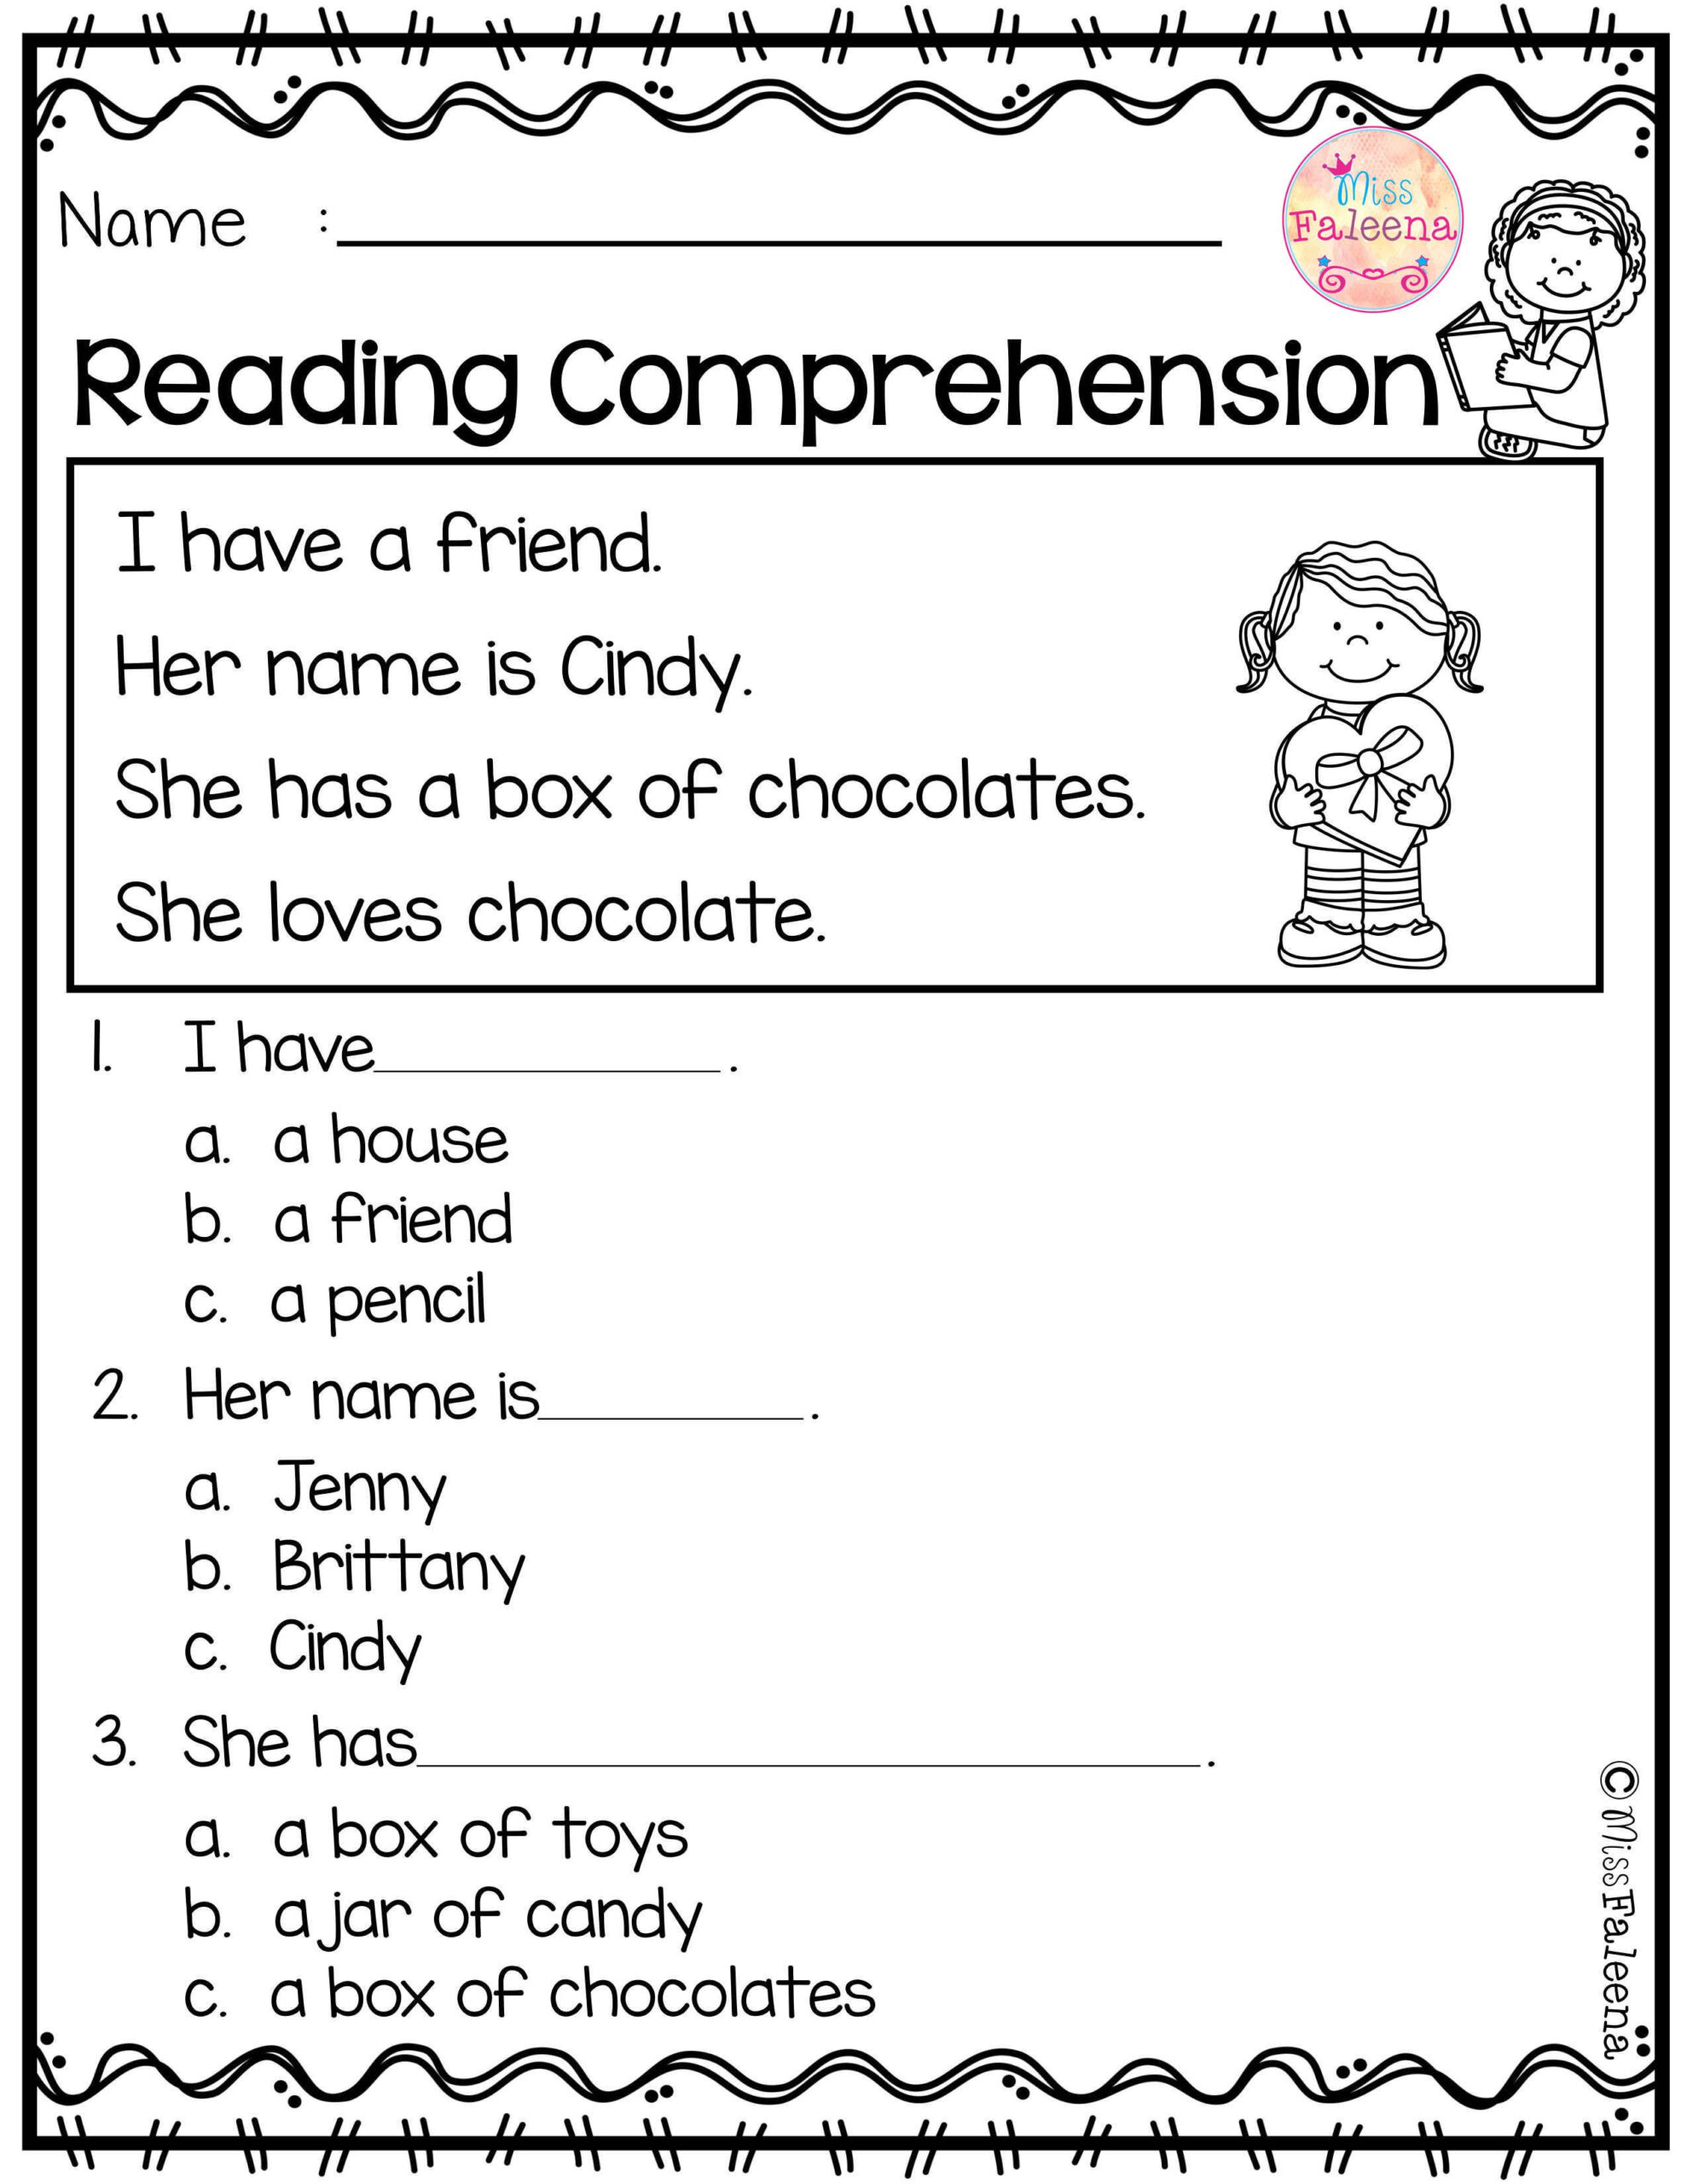 reading-comprehension-worksheets-kindergarten-reading-comprehension